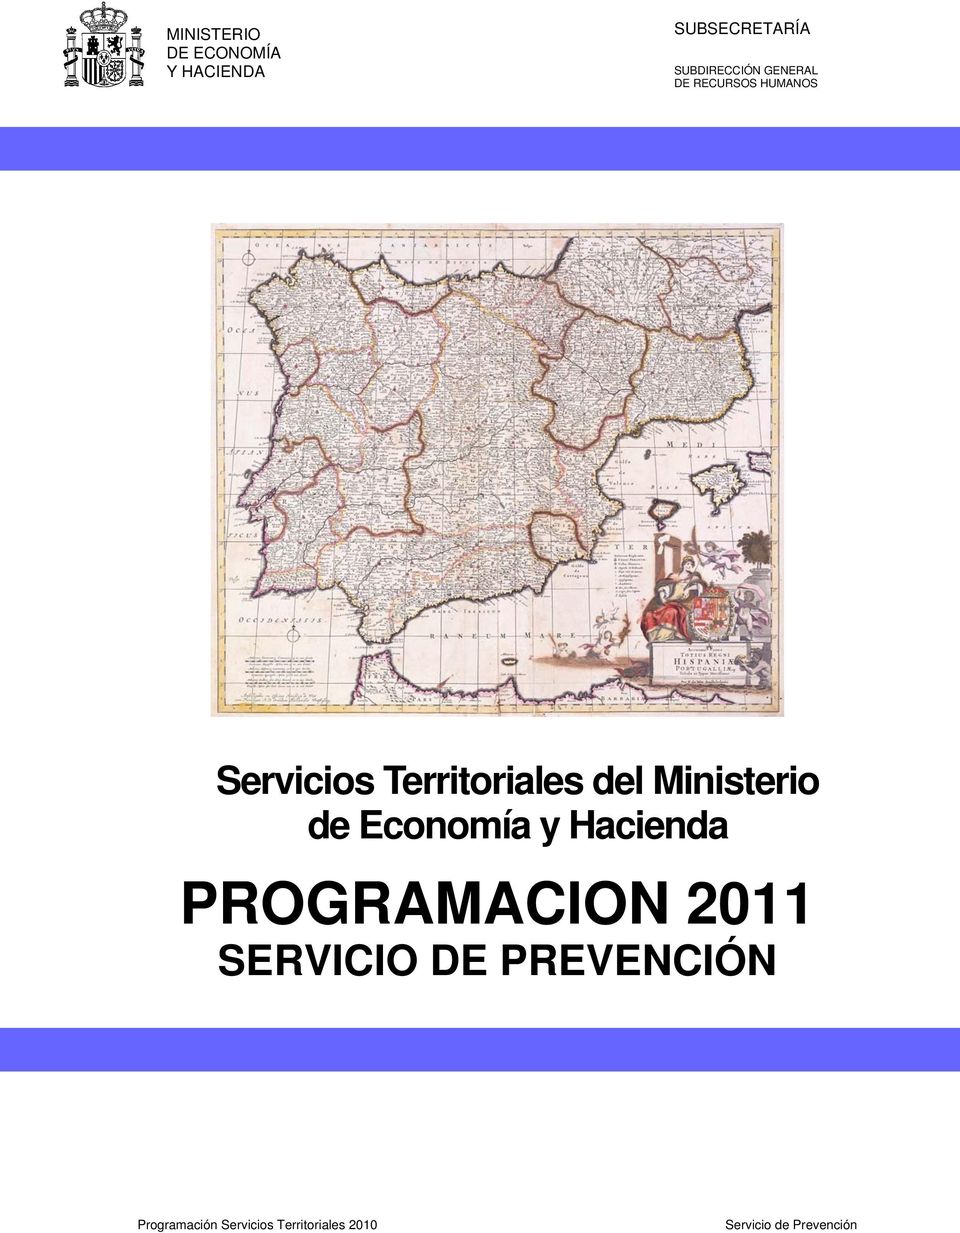 PROGRAMACION 2011 SERVICIO DE